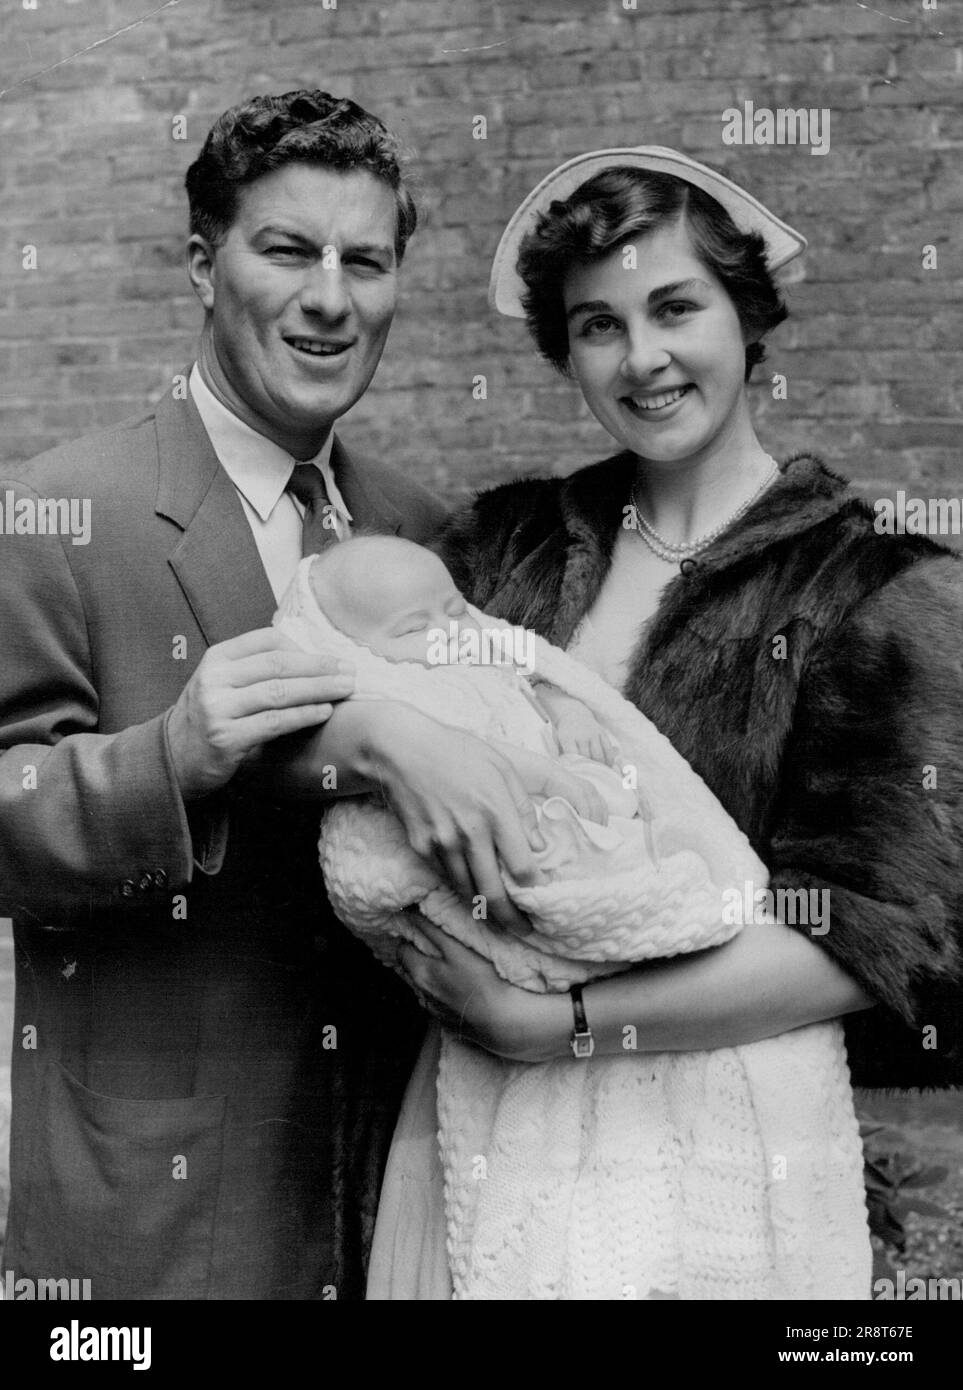 Peter Thompson Tochter taufte -- britischer Open Golf Champion Peter Thomson und seine Frau mit ihrer neun Wochen alten Tochter, taufte gestern Deidre Reta in London. 1. Juli 1954. (Foto: Paul Popper, Paul Popper Ltd.) Stockfoto